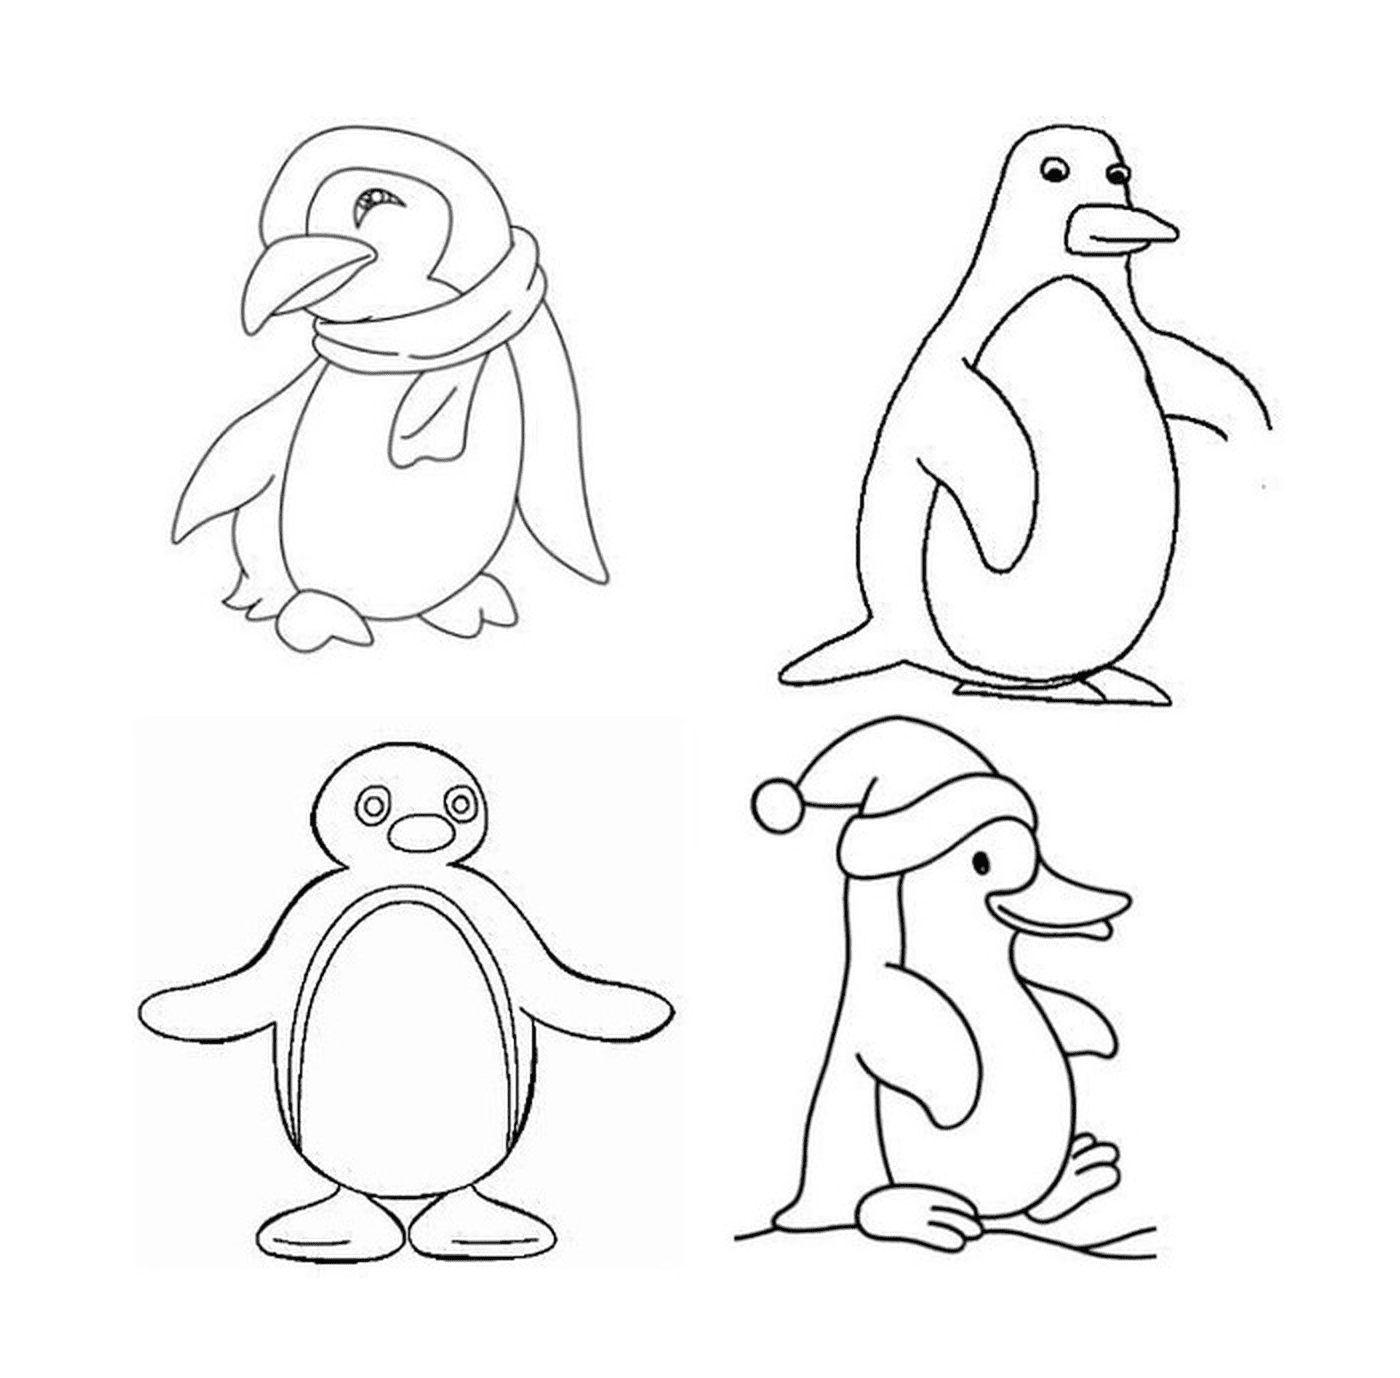  Quatro pinguins diferentes em desenho 